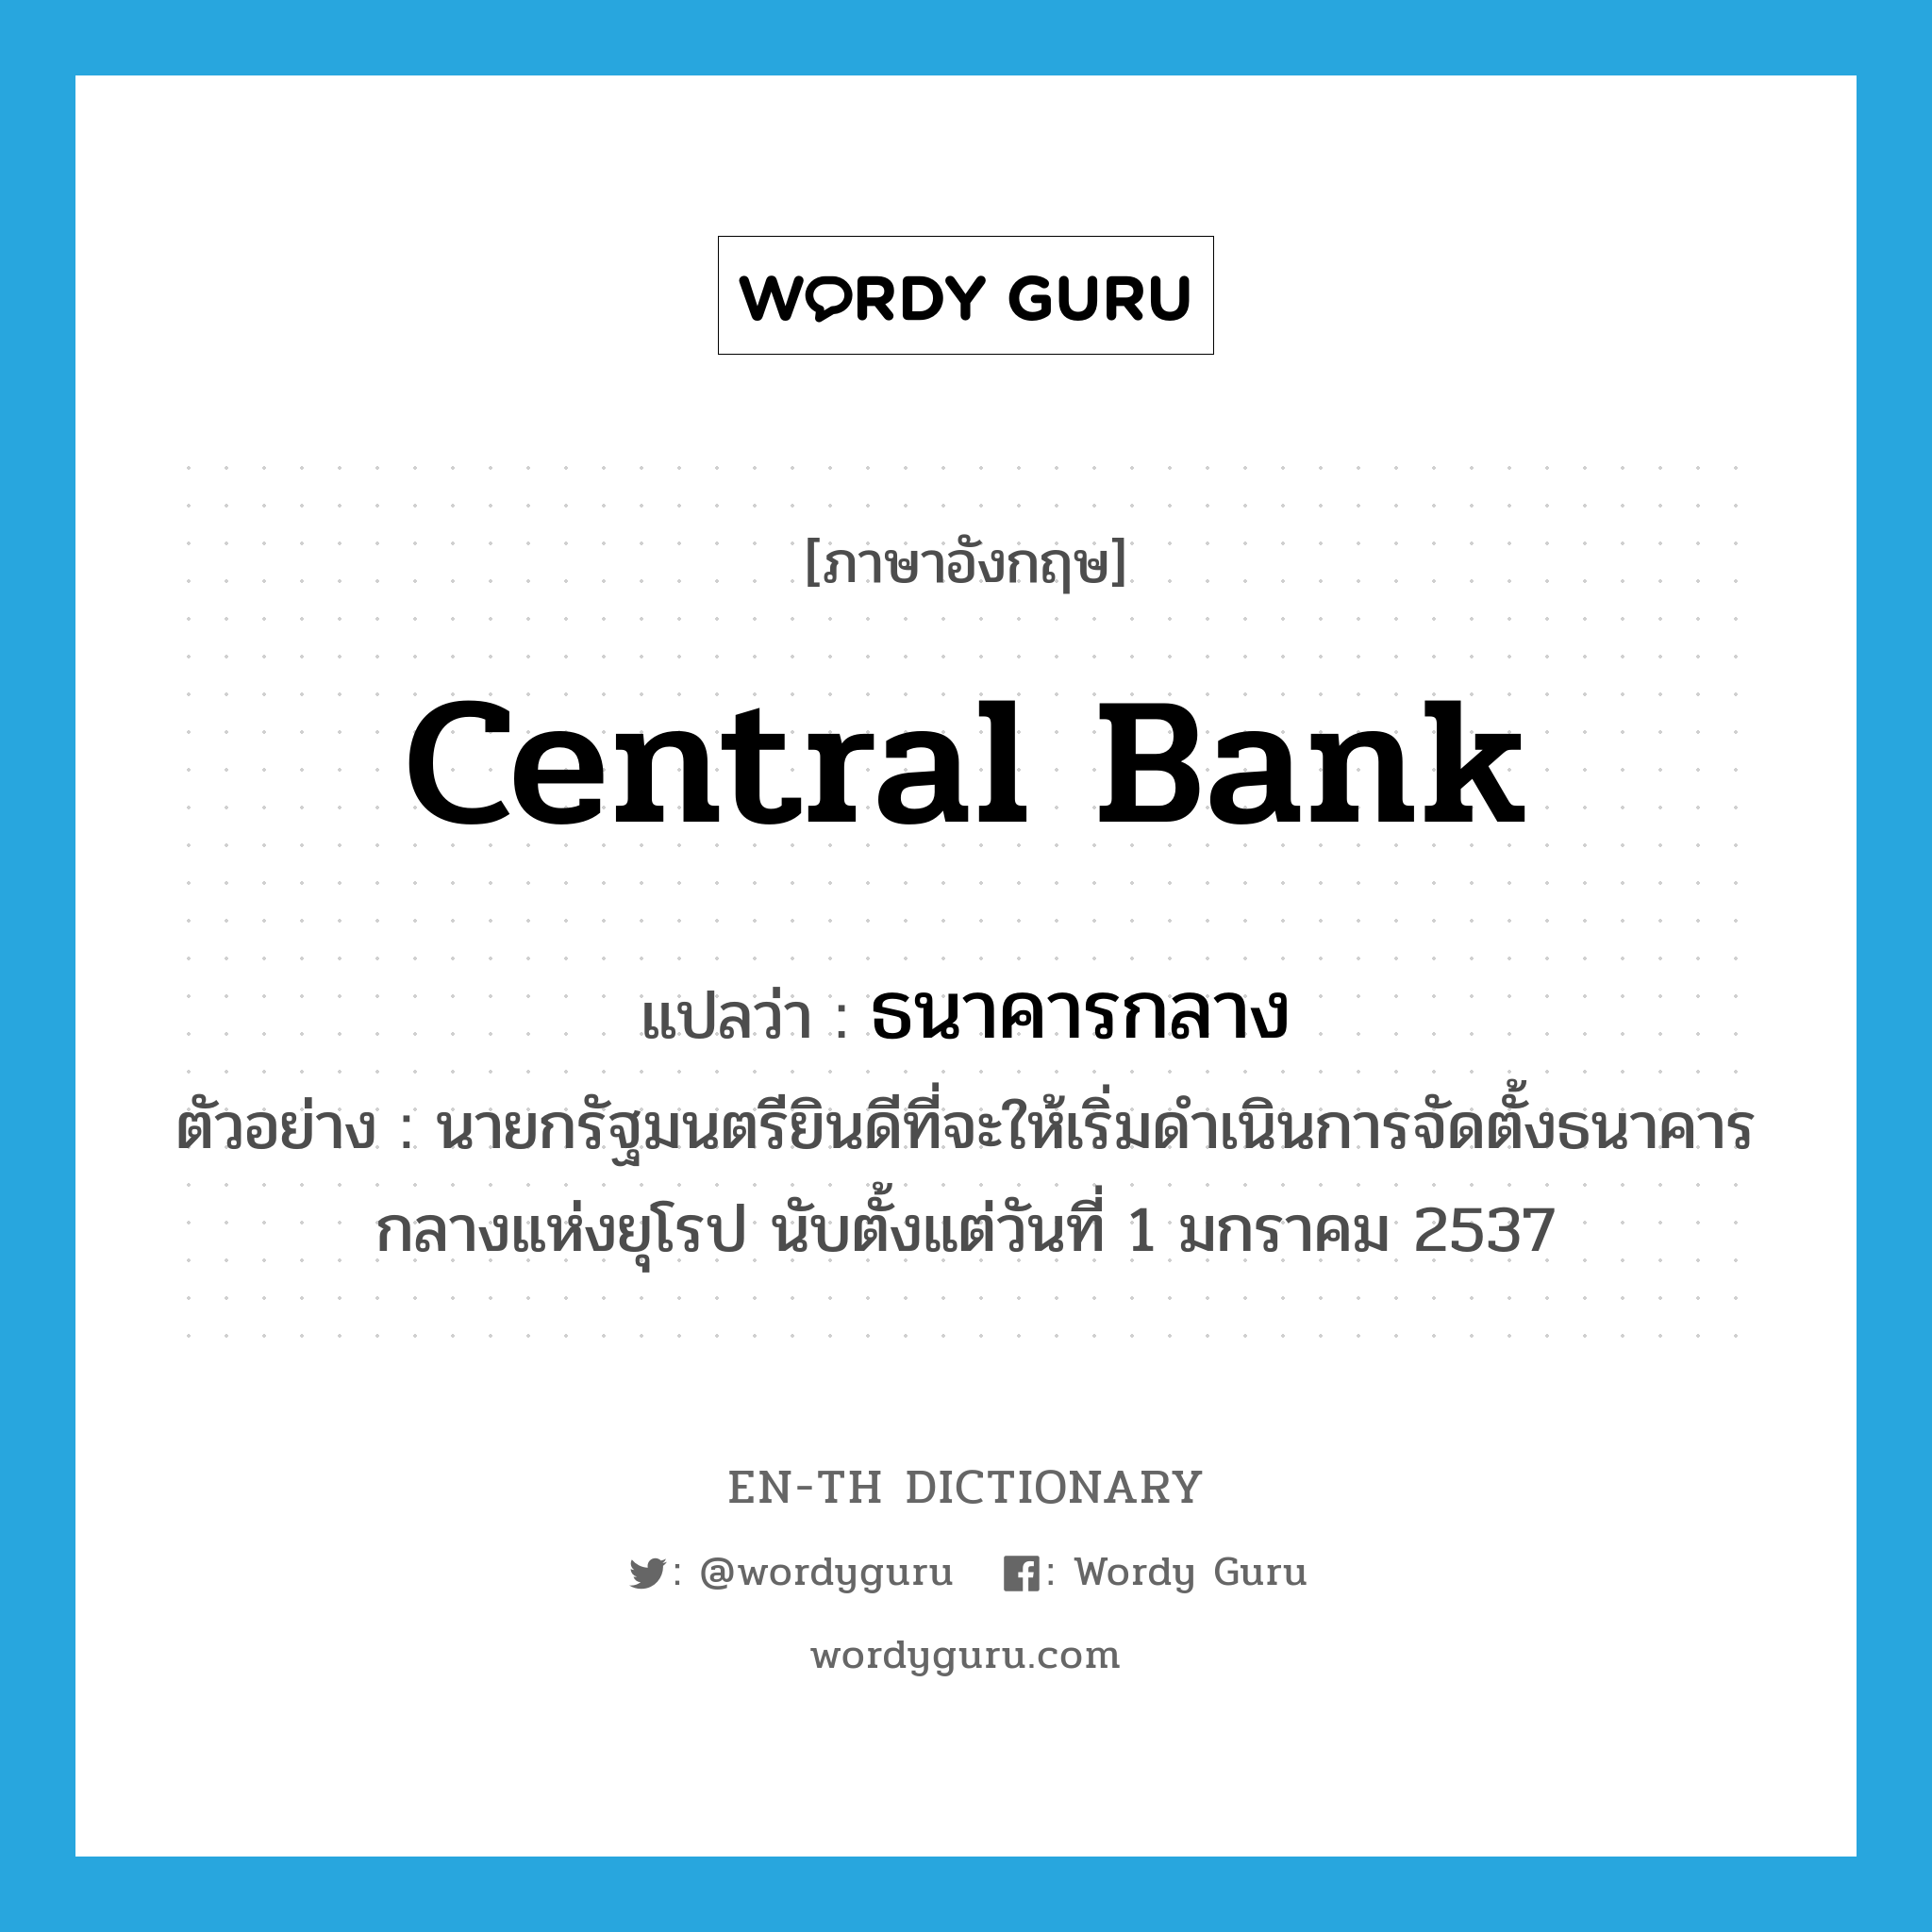 ธนาคารกลาง ภาษาอังกฤษ?, คำศัพท์ภาษาอังกฤษ ธนาคารกลาง แปลว่า central bank ประเภท N ตัวอย่าง นายกรัฐมนตรียินดีที่จะให้เริ่มดำเนินการจัดตั้งธนาคารกลางแห่งยุโรป นับตั้งแต่วันที่ 1 มกราคม 2537 หมวด N